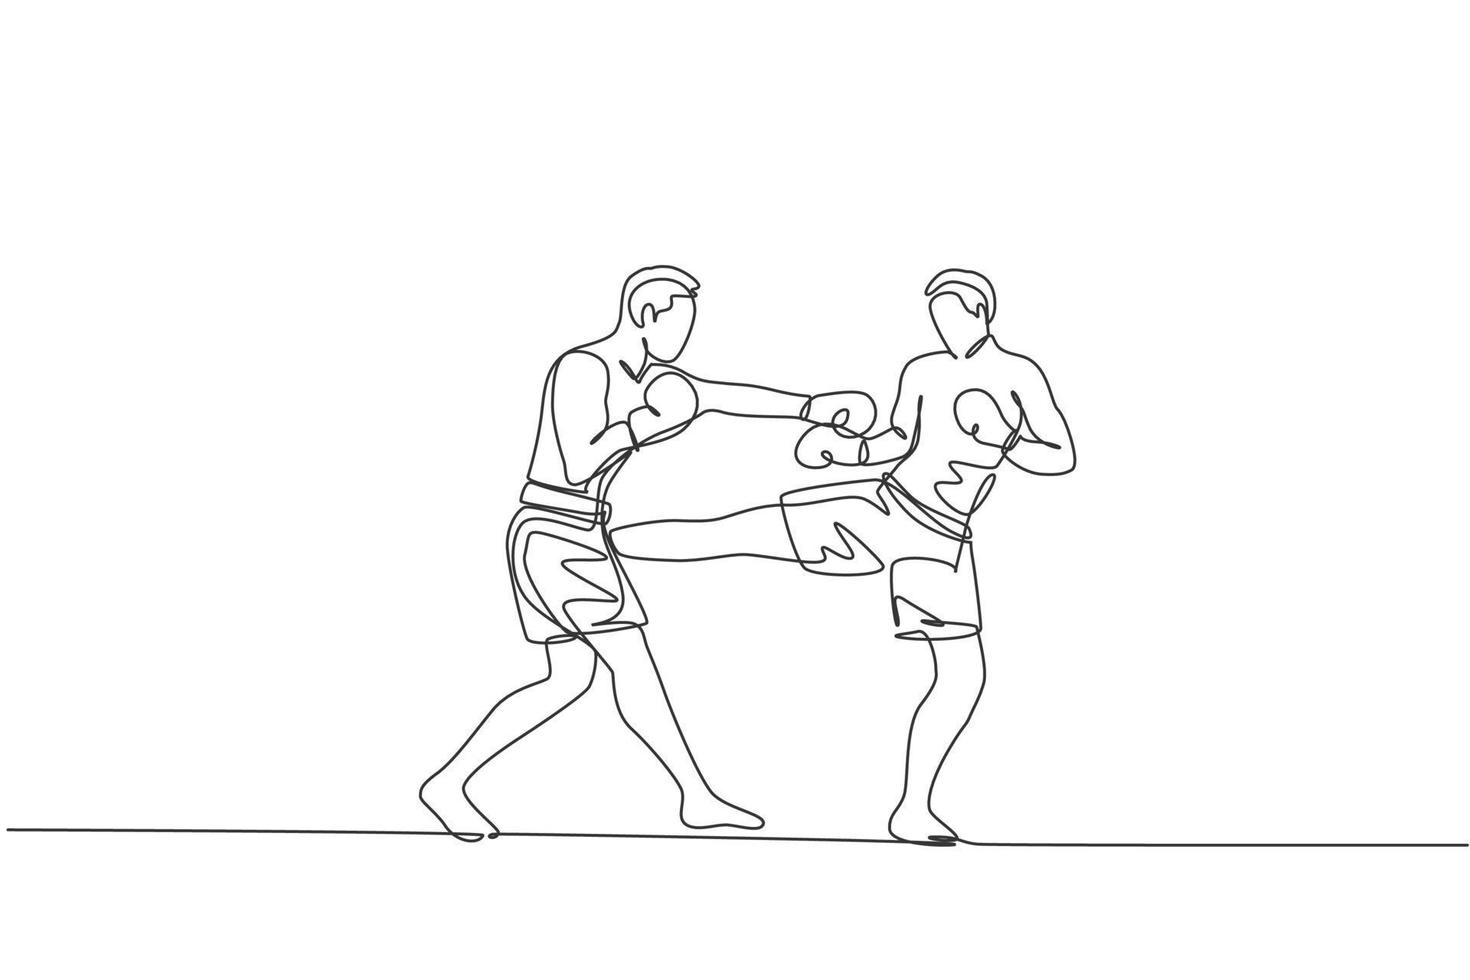 un seul dessin au trait d'un jeune homme énergique kickboxer combattant dans un tournoi local au graphique d'illustration vectorielle d'arène de boxe. concept de sport de mode de vie sain. conception moderne de dessin en ligne continue vecteur